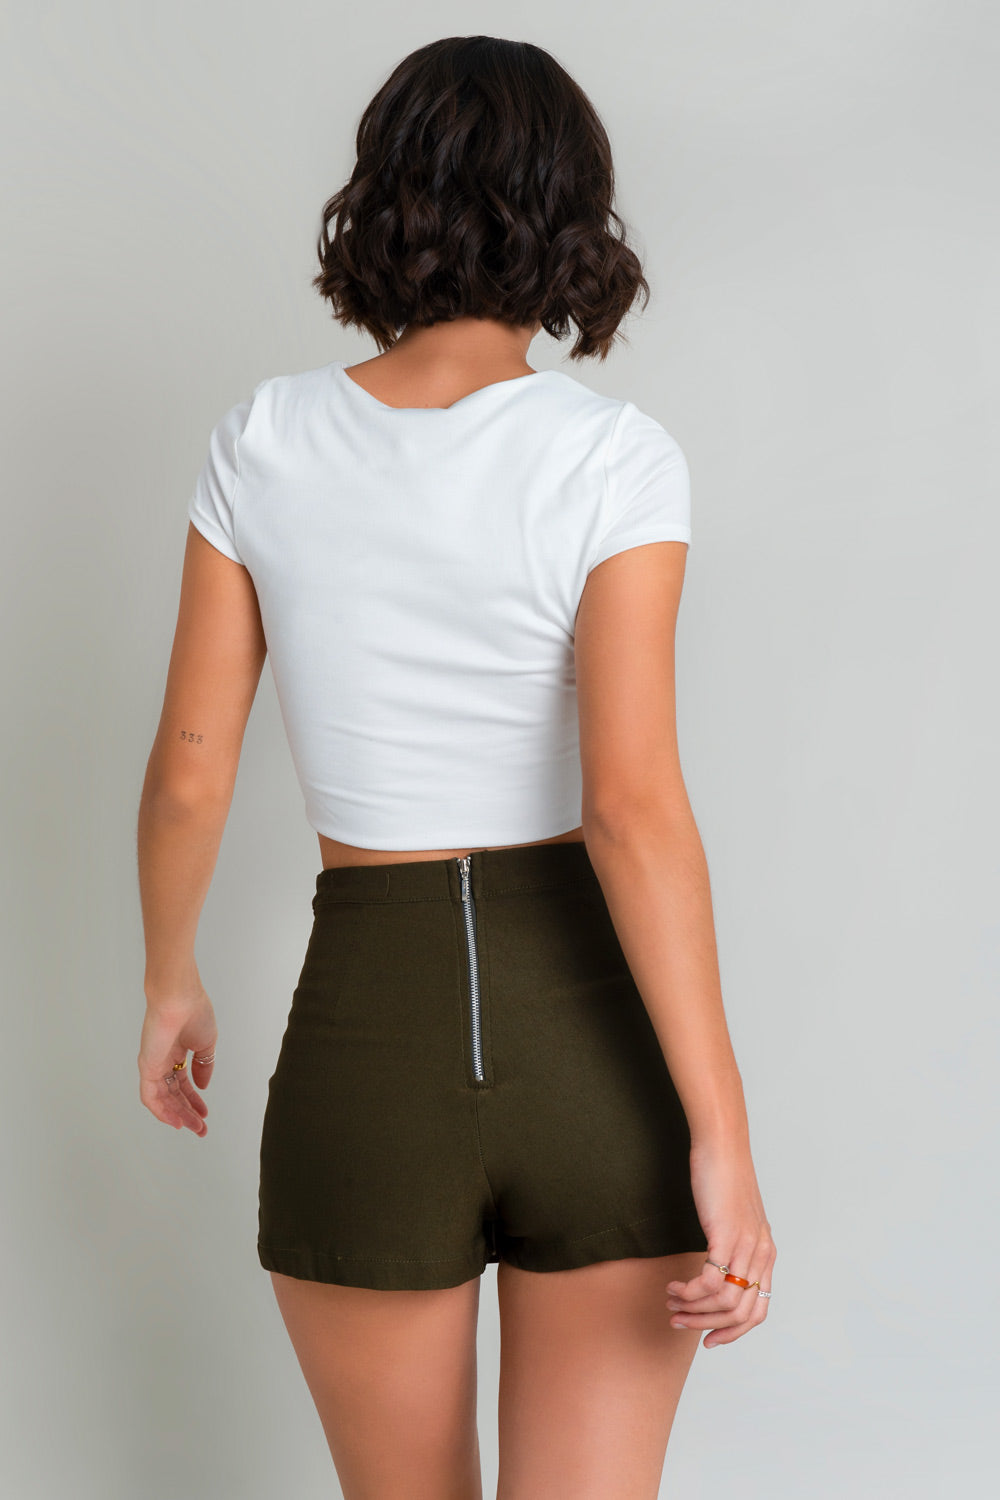 Falda short de fit ajustado, cintura alta con pretina, plisados frontales con abertura y cierre posterior con cremallera visible en contraste.